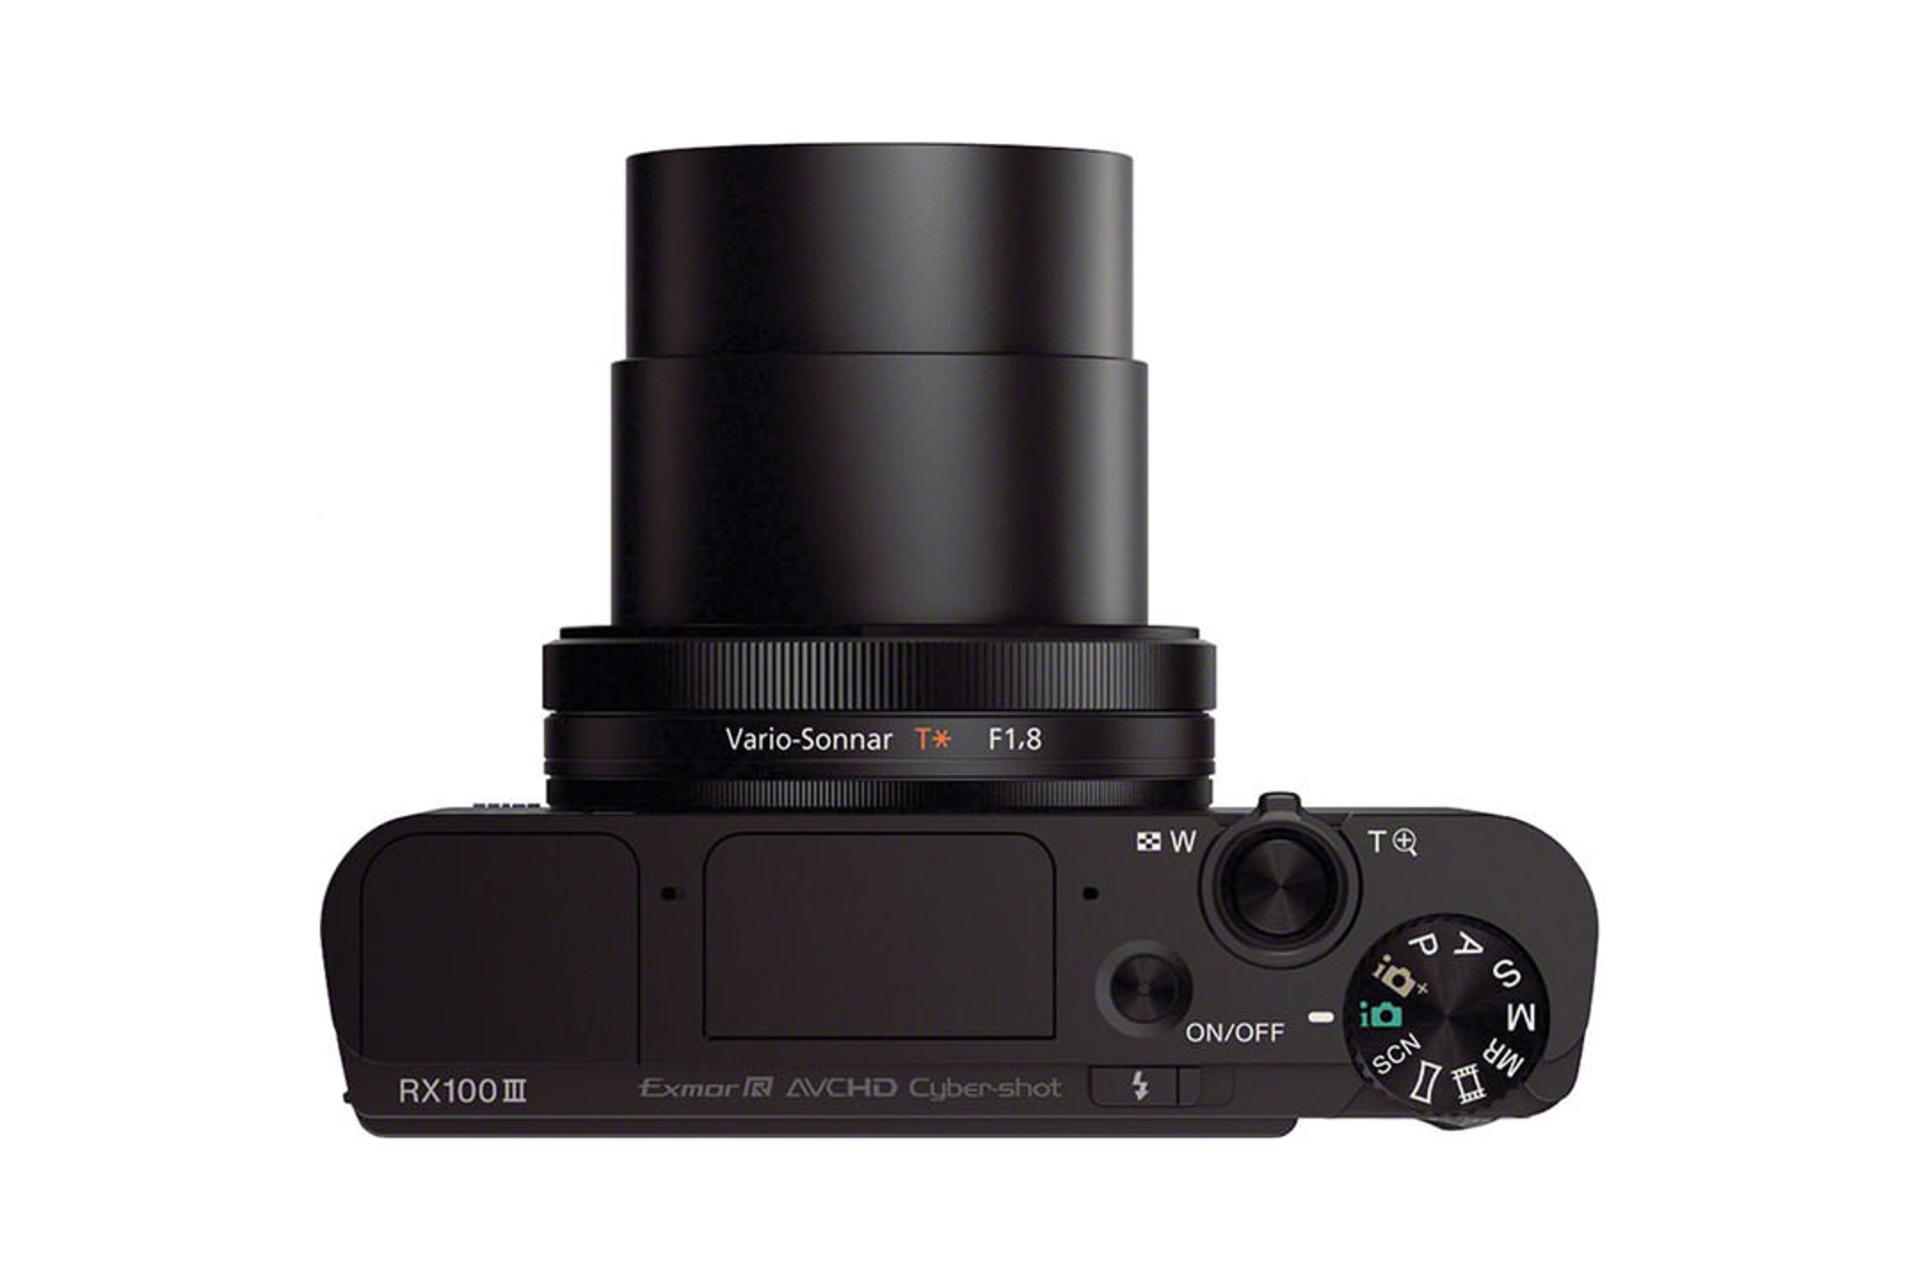 Sony Cyber-shot DSC-RX100 III	